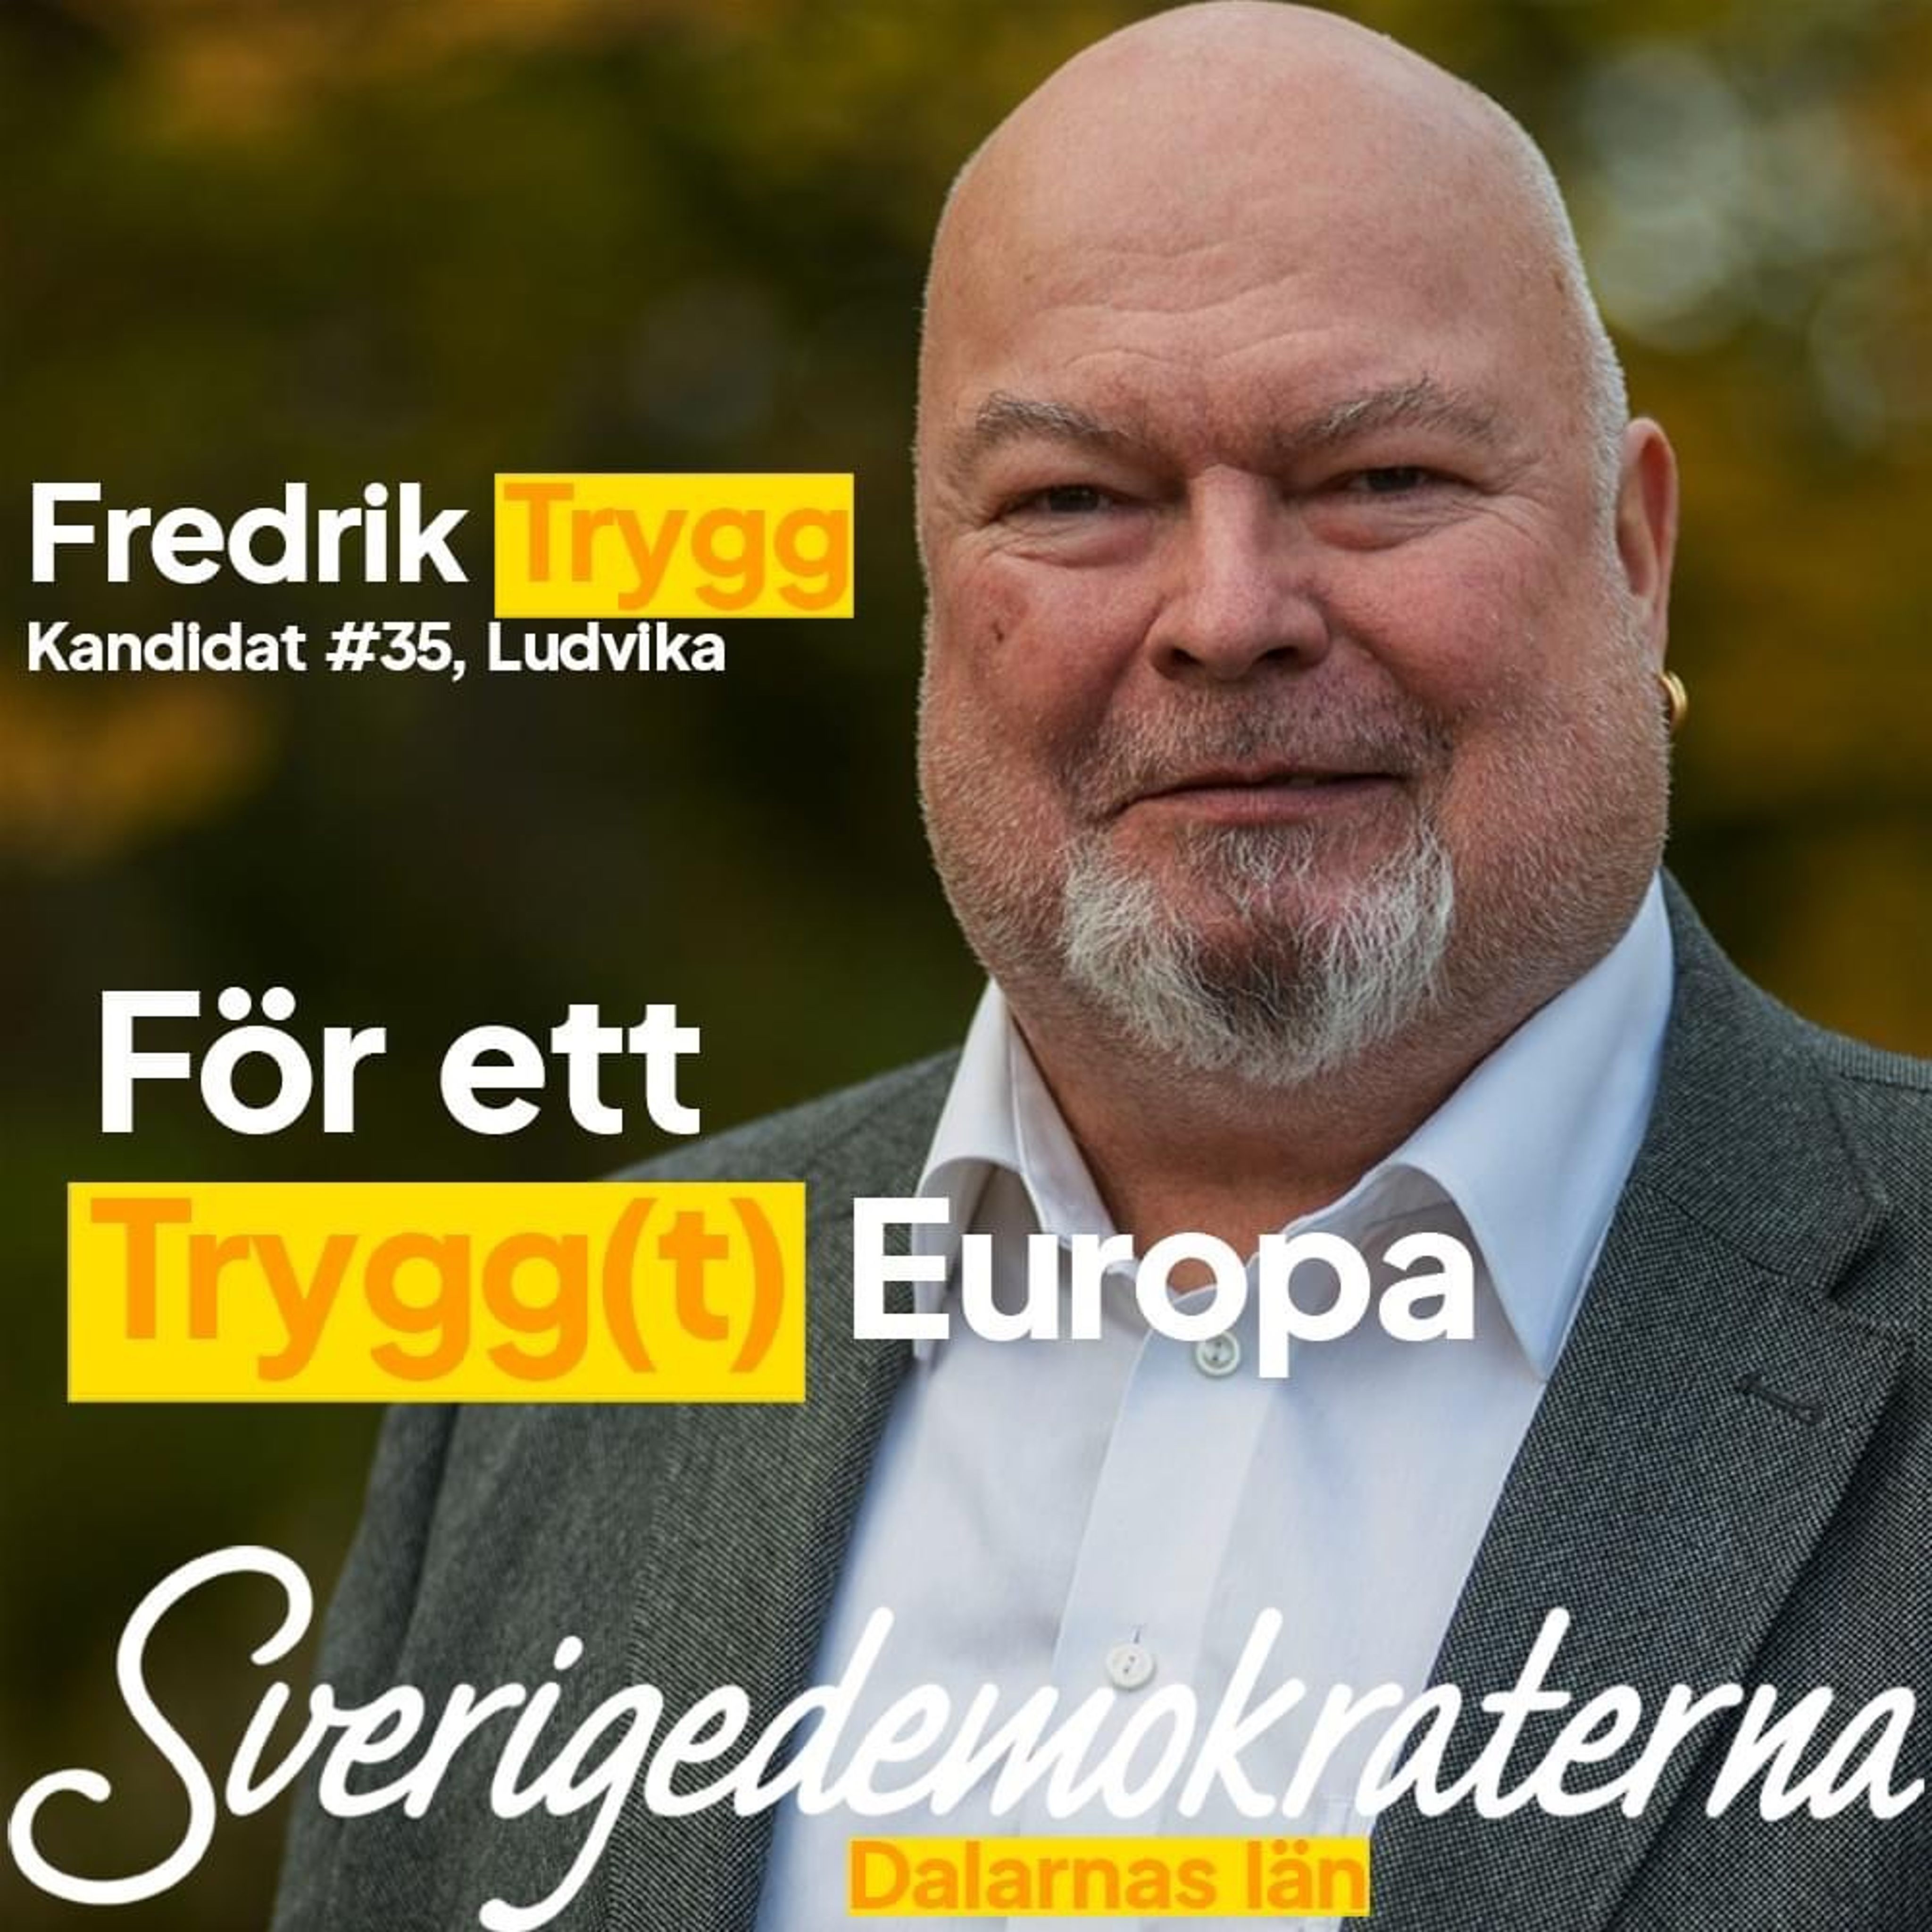 Fredrik Trygg